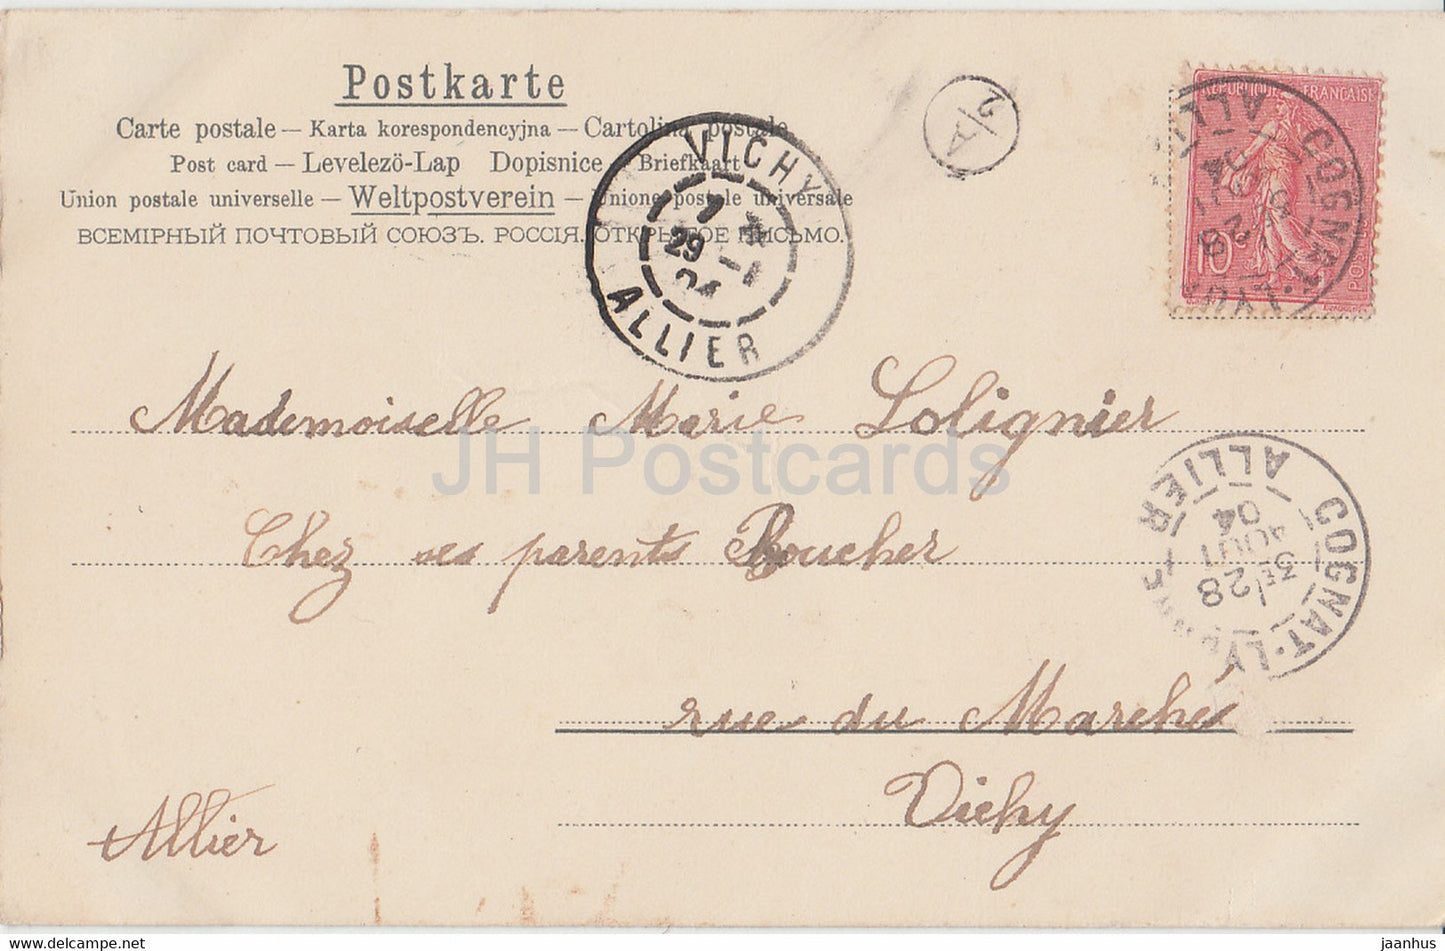 Blumen - gelbe Rosen - Landschaft - K &amp; BD - Illustration - alte Postkarte - 1904 - Deutschland - gebraucht